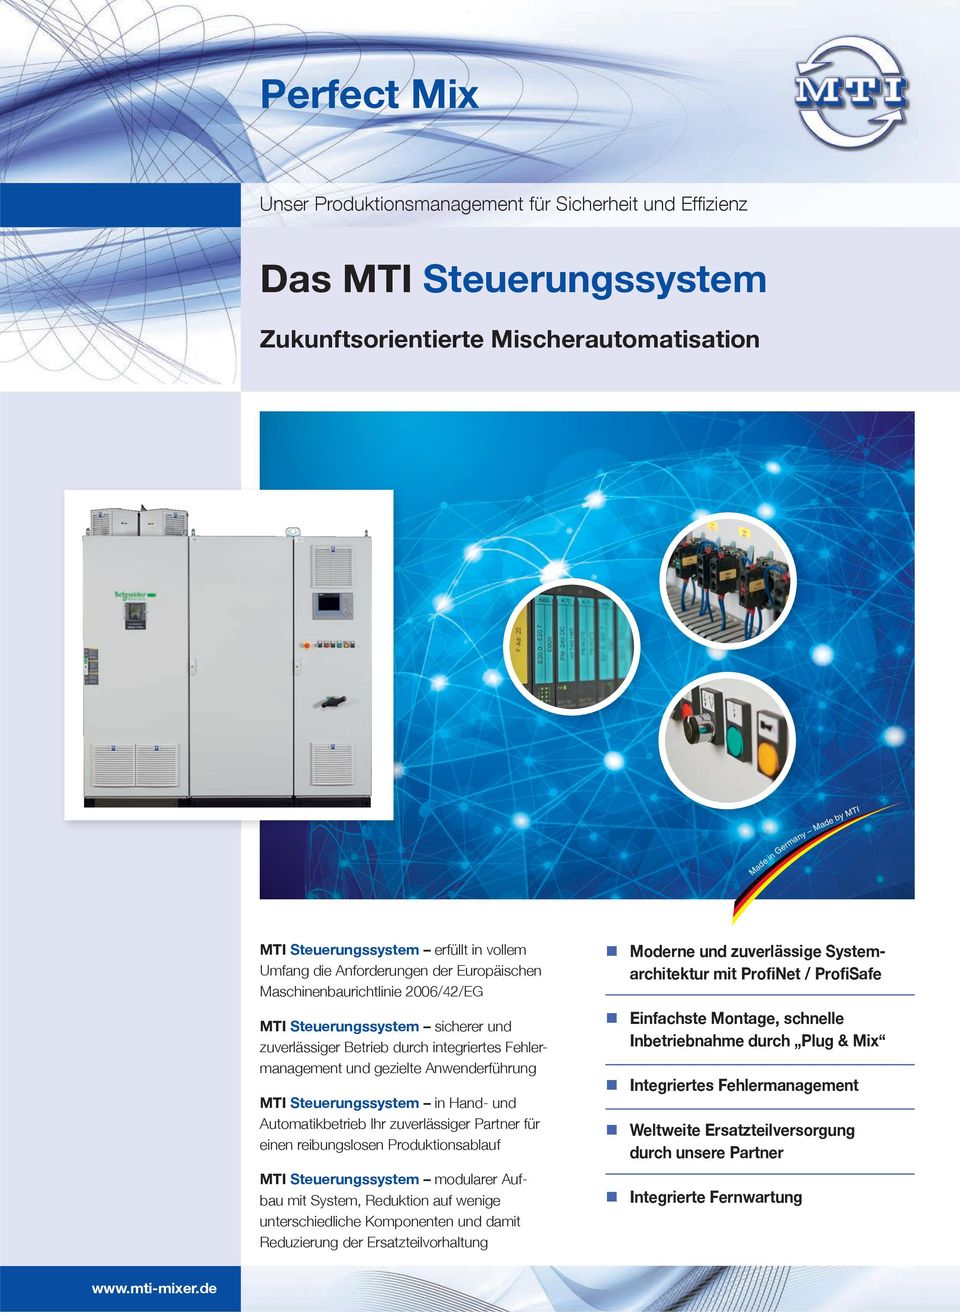 Anwenderführung MTI Steuerungssystem in Hand- und Automatikbetrieb Ihr zuverlässiger Partner für einen reibungslosen Produktionsablauf MTI Steuerungssystem modularer Aufbau mit System, Reduktion auf